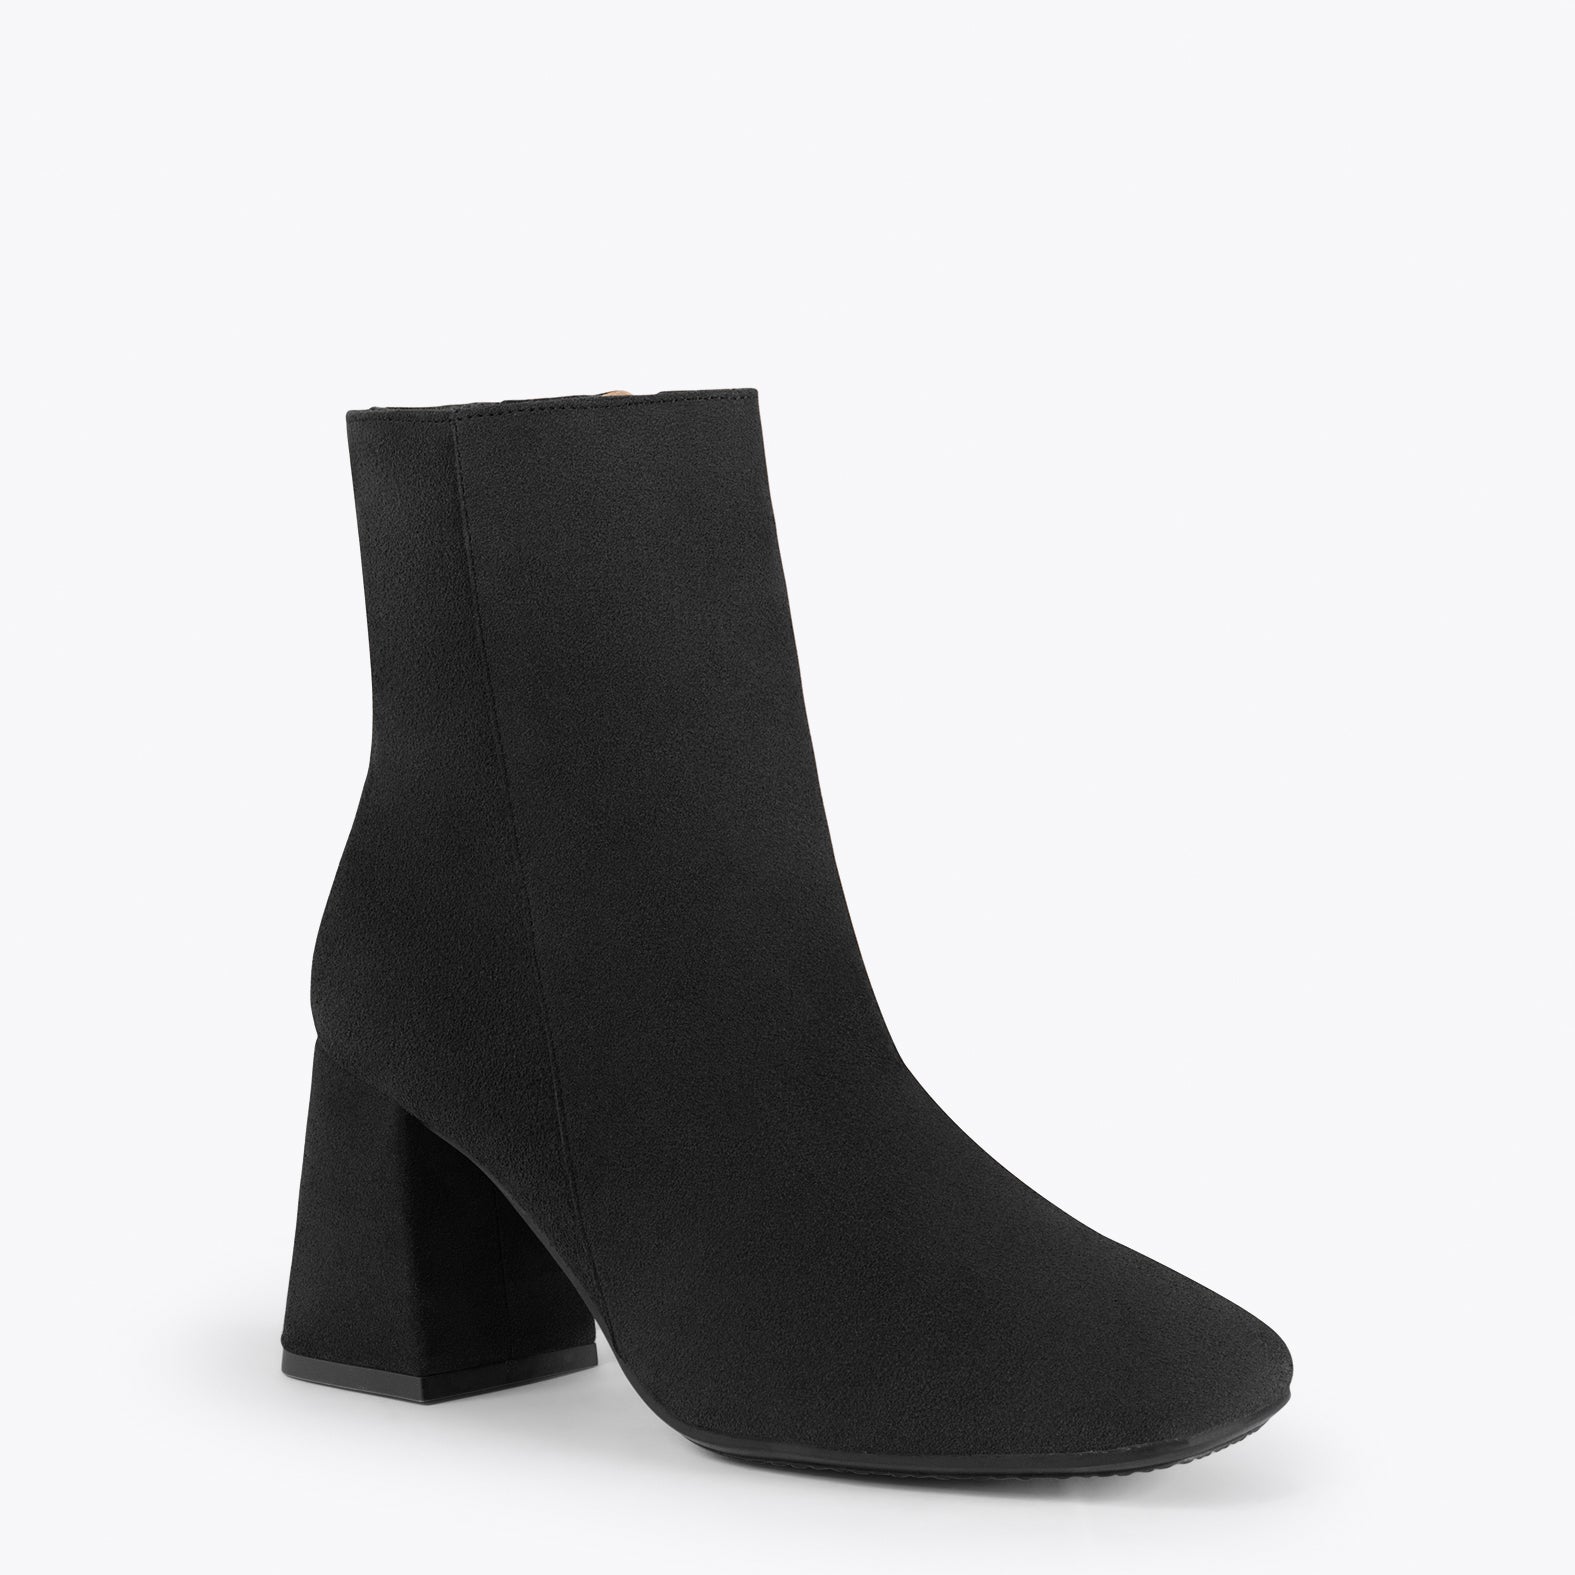 PARIS – BLACK square toe bootie with block heel